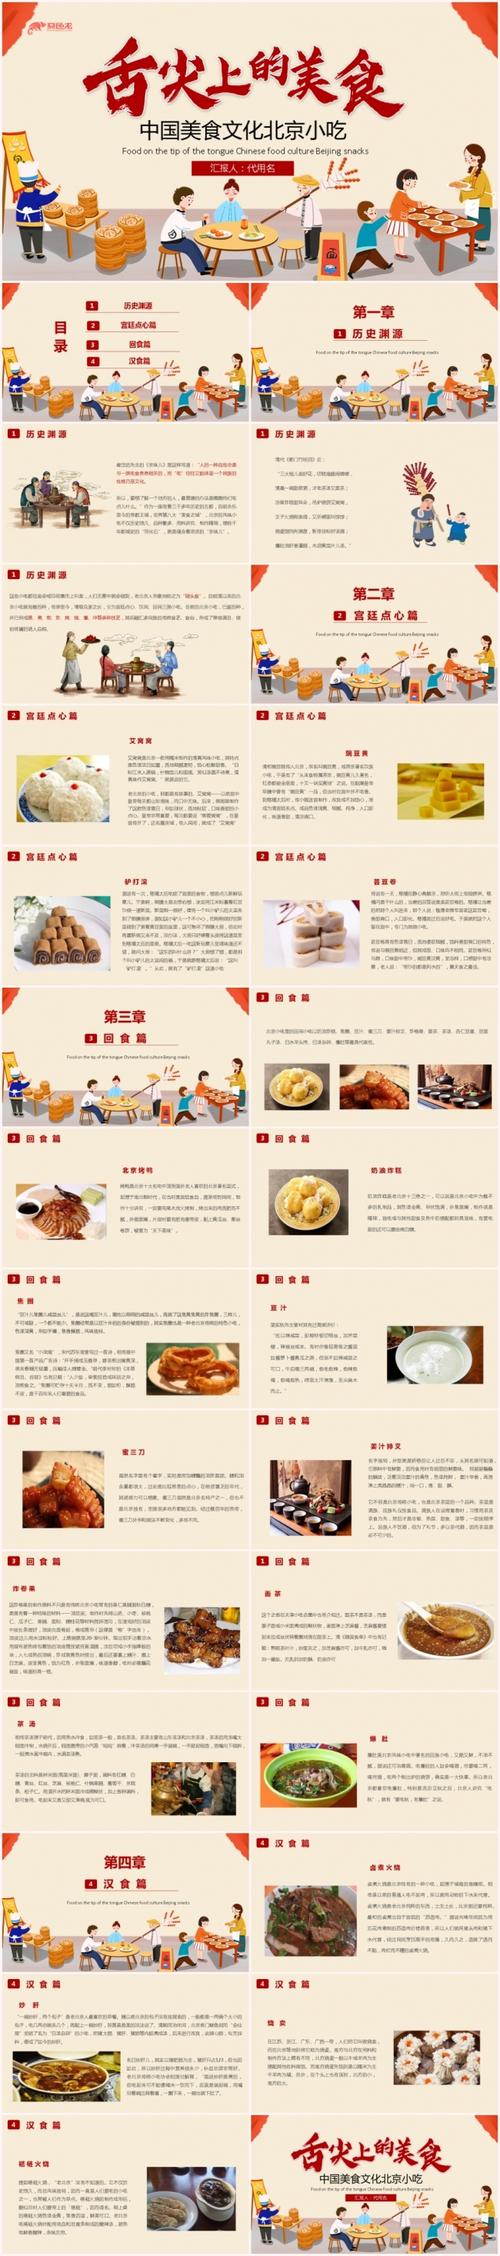 舌尖上的美食中国美食文化北京小吃介绍ppt模板